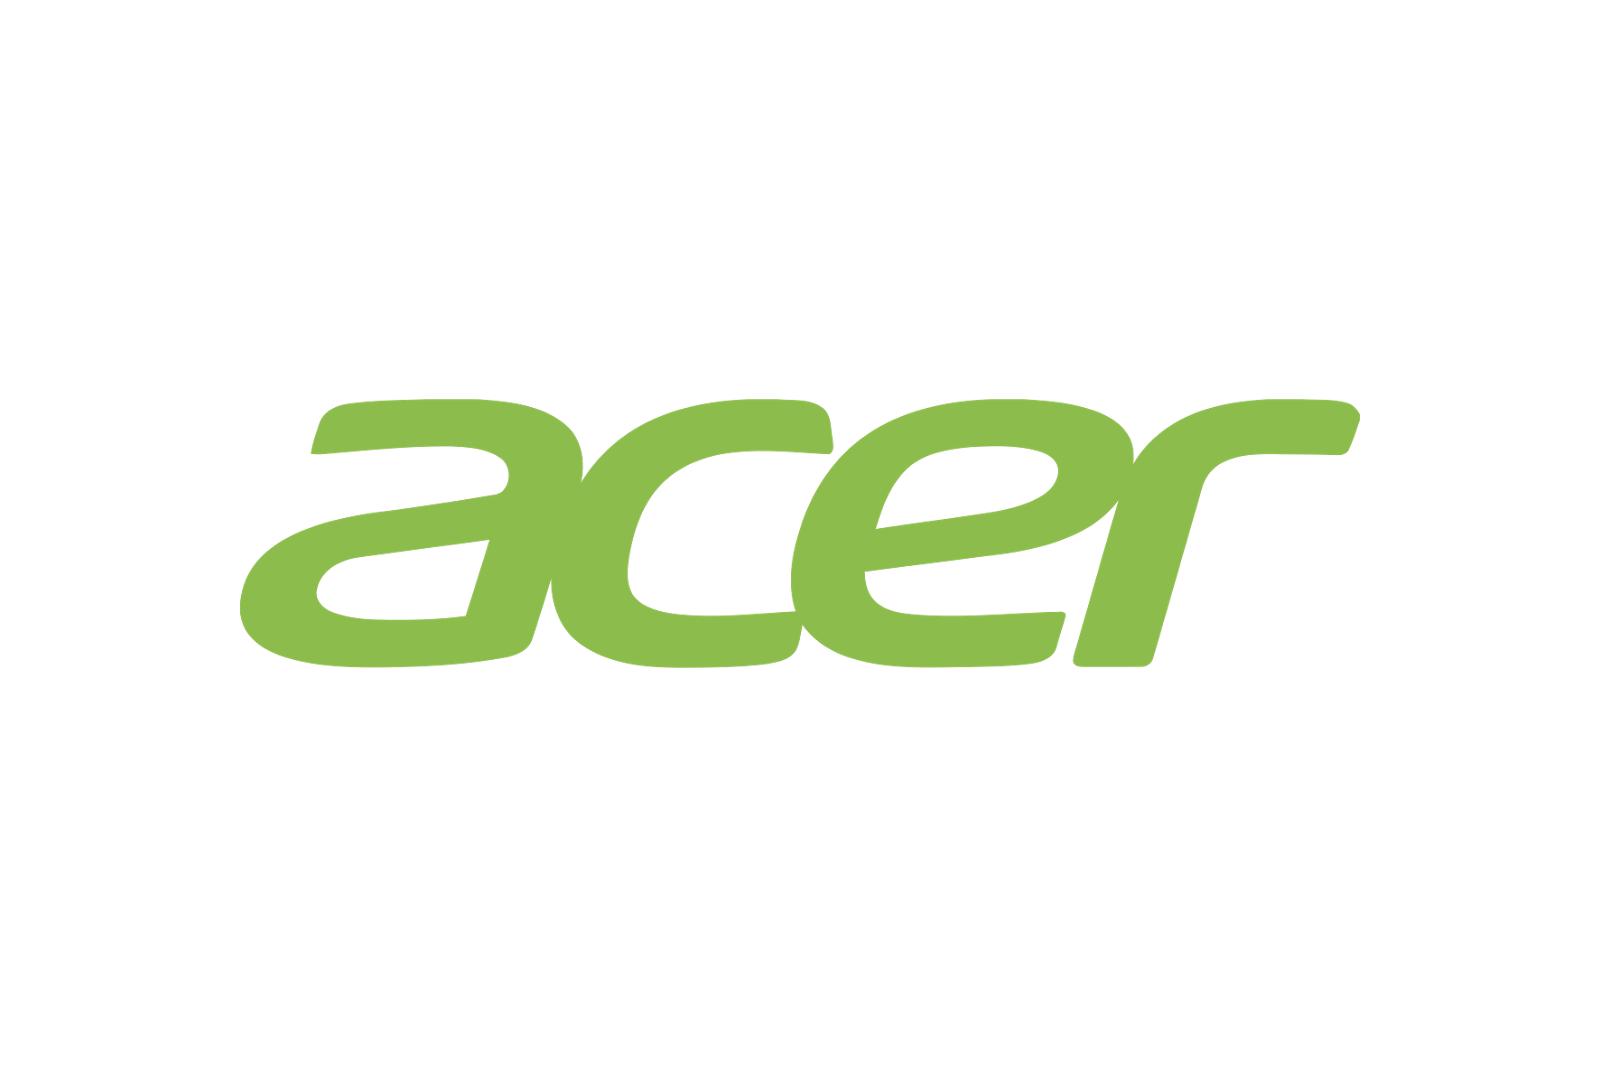 Acer z najwyższym zyskiem od sześciu lat